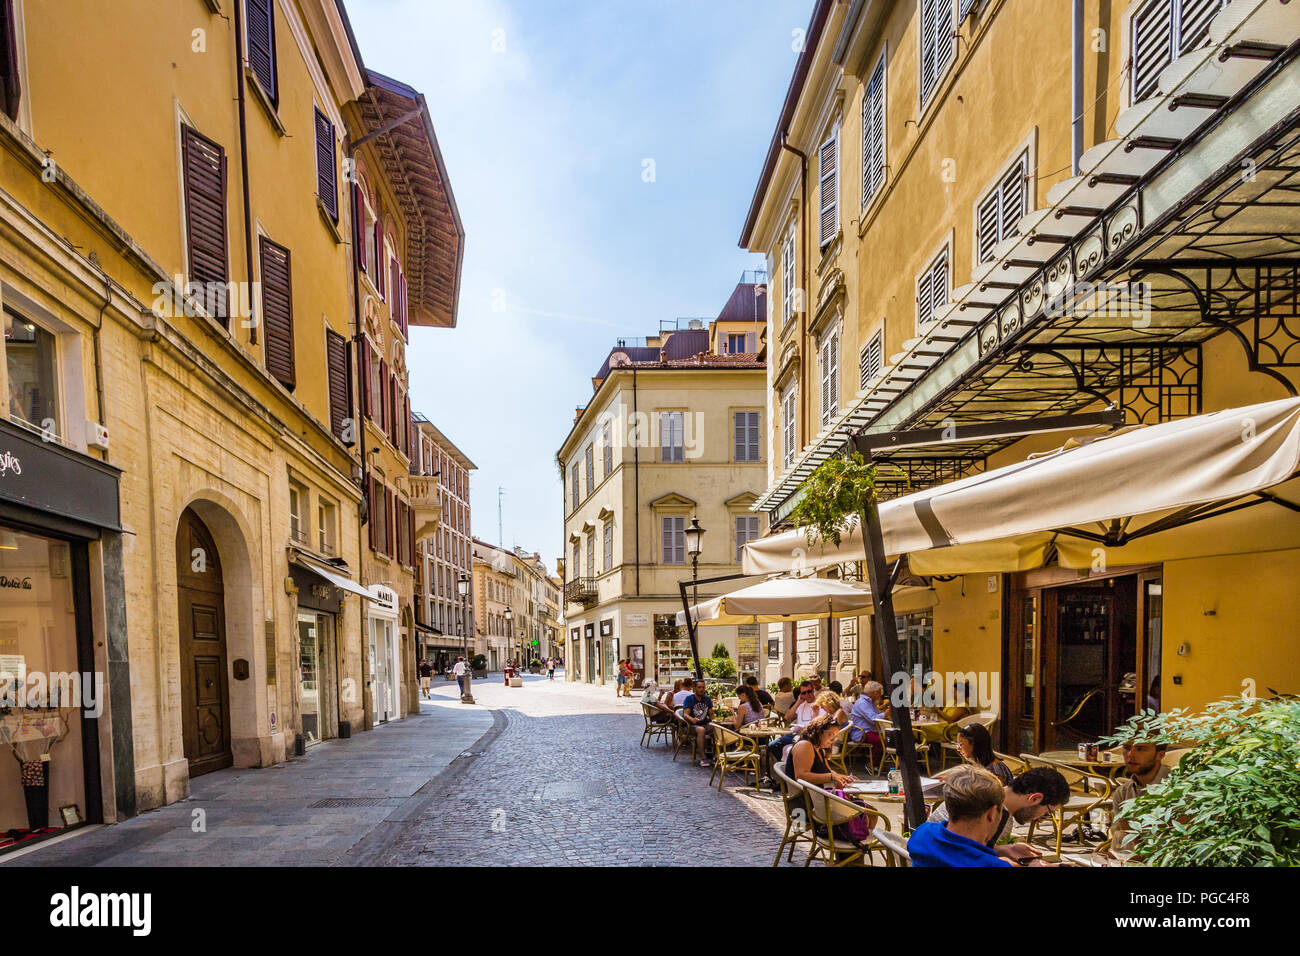 PARMA, Italien - 23 AUGUST 2018: Touristen sind zu Fuß und genießen Sie die bezaubernden historischen Straßen von Parma, elegante Stadt in der Region Emilia-Romagna. Stockfoto